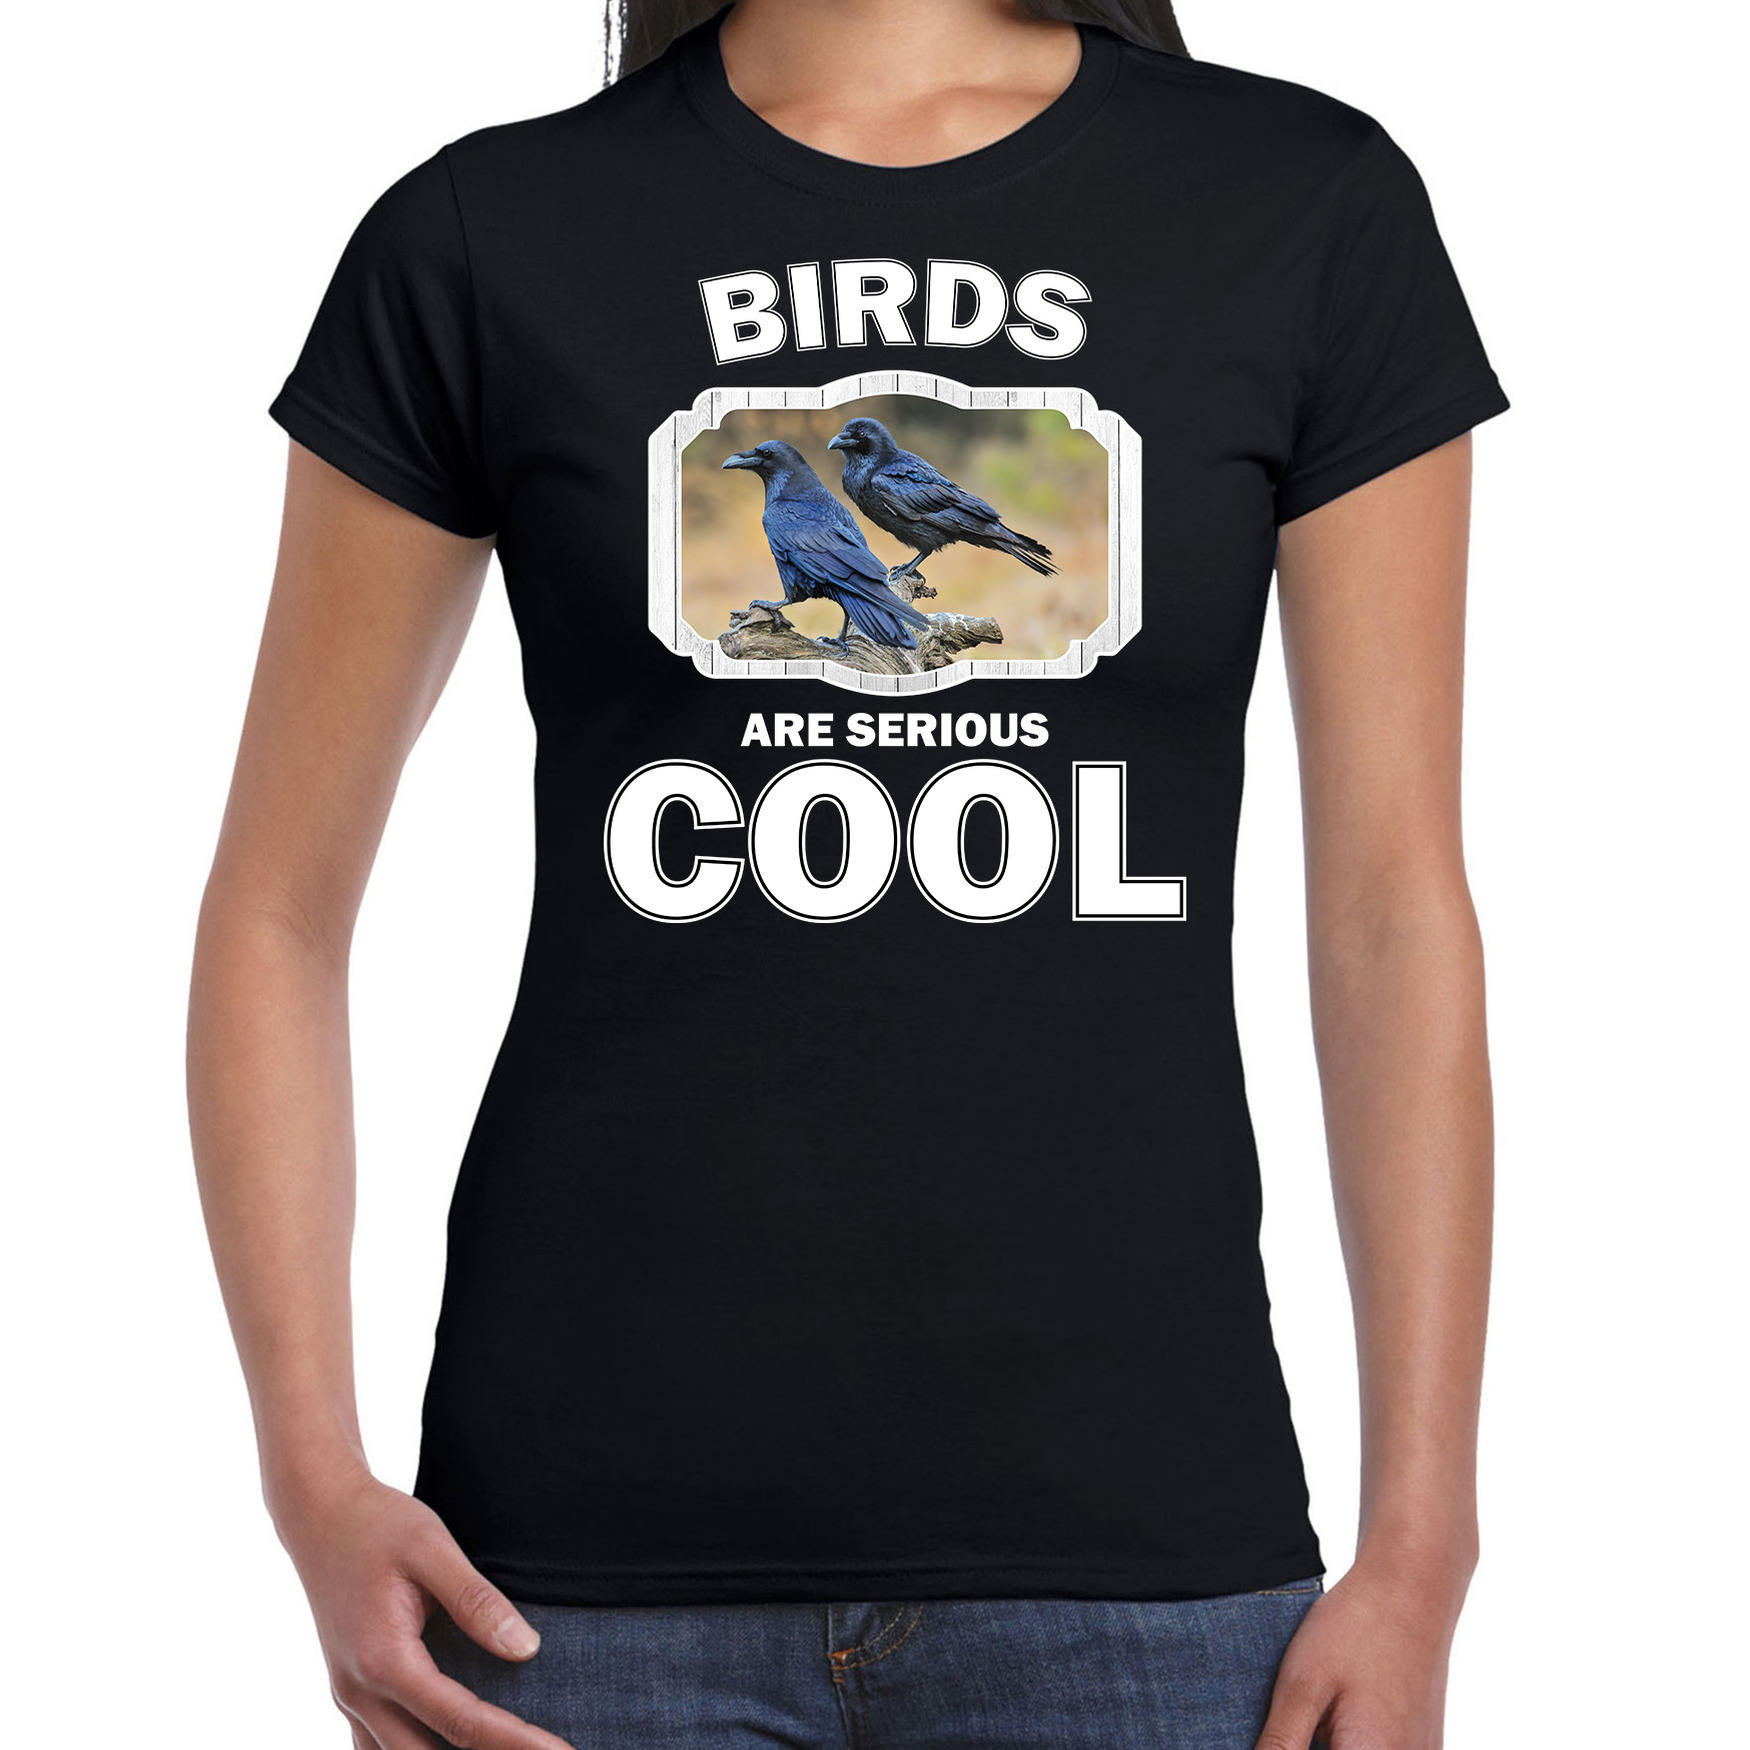 Dieren raaf t-shirt zwart dames birds are cool shirt